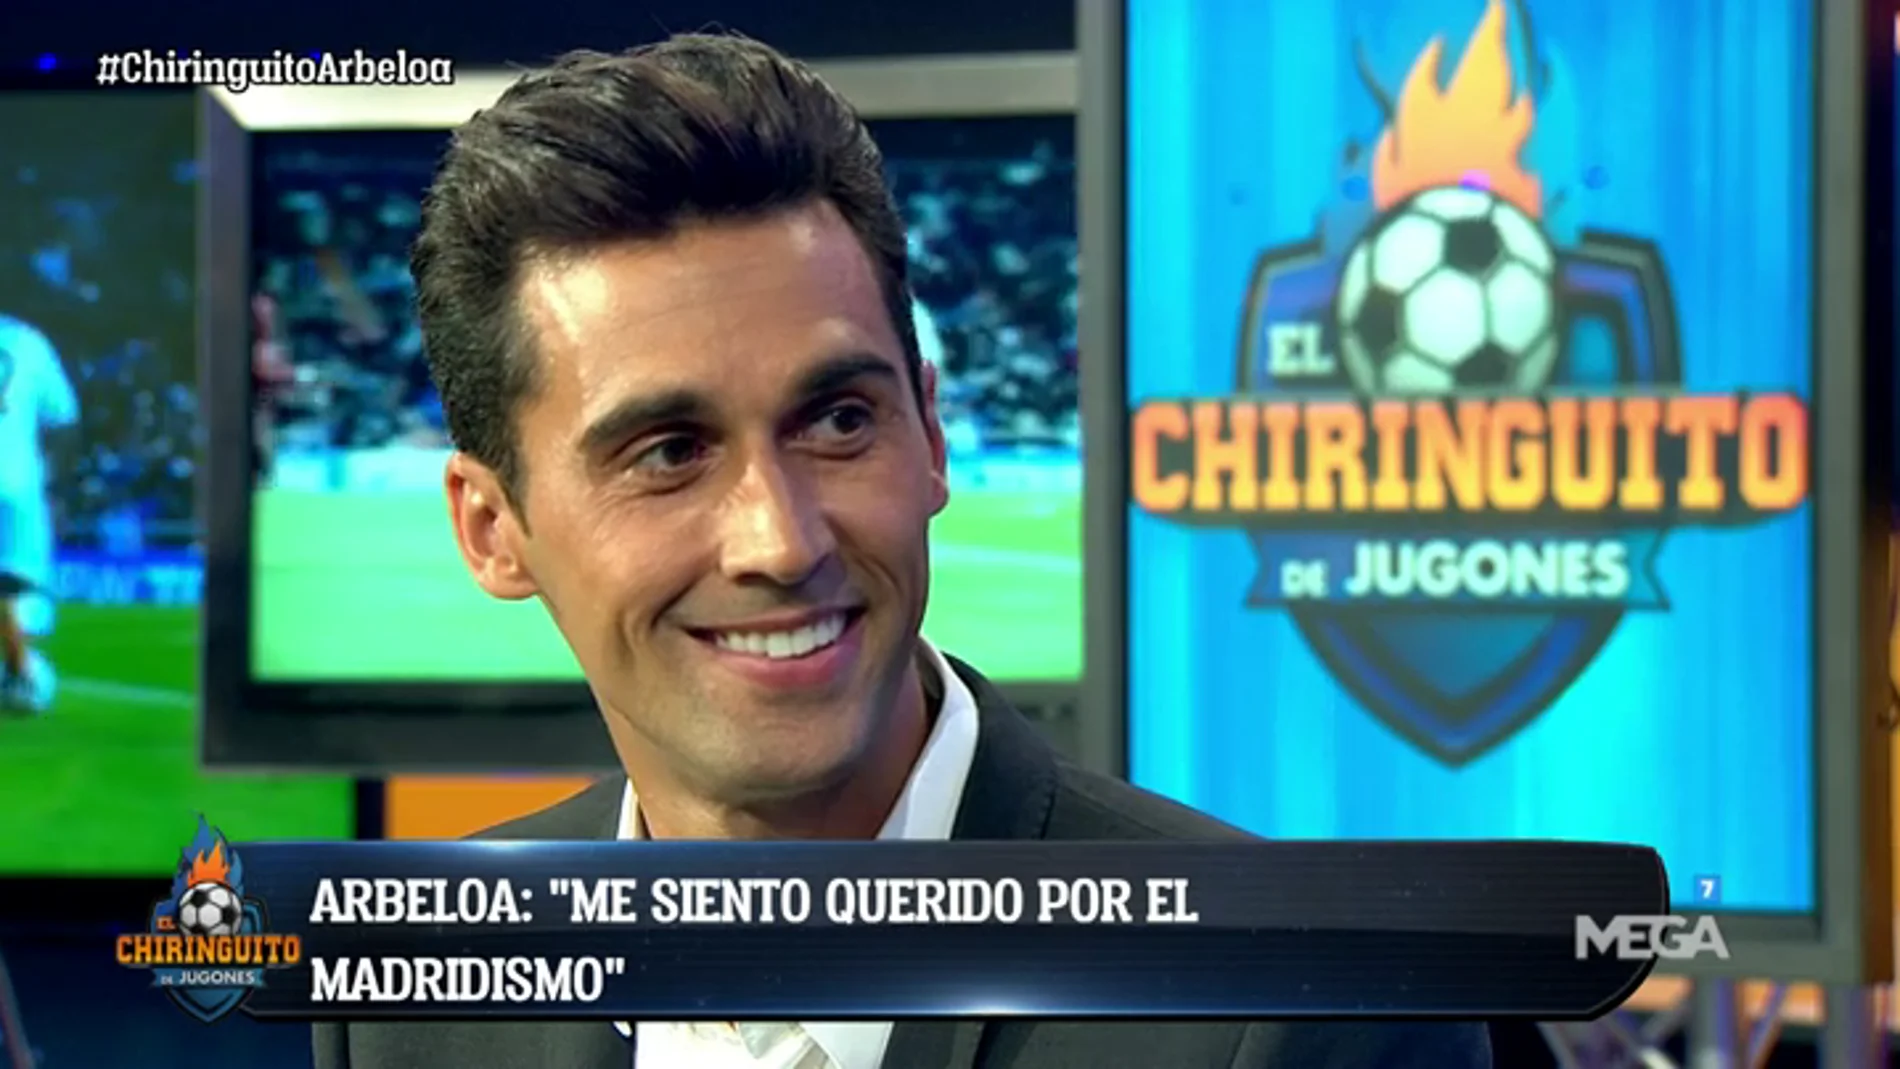 Álvaro Arbeloa, en El Chiringuito: "Defender a Mourinho me salió barato, lo volvería a hacer"